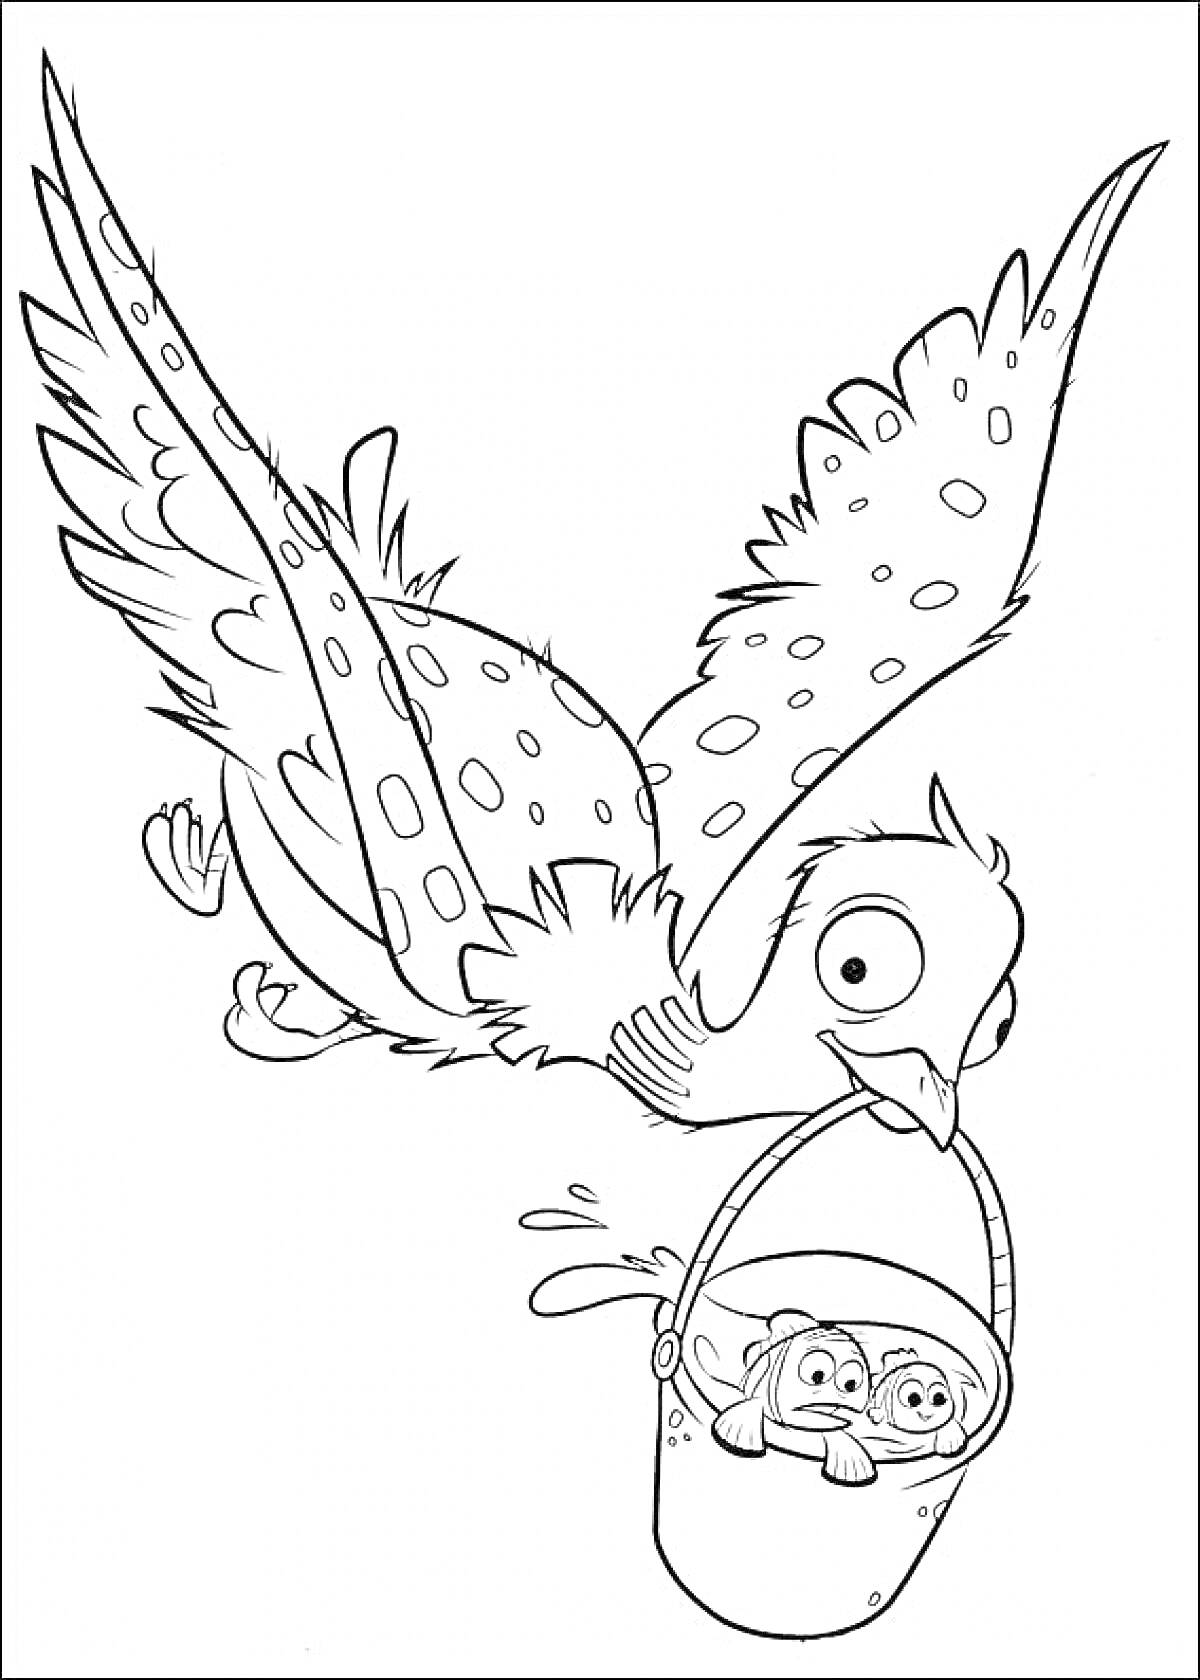 Птица летит, держит ведро клювом, в ведре два мультипликационных персонажа